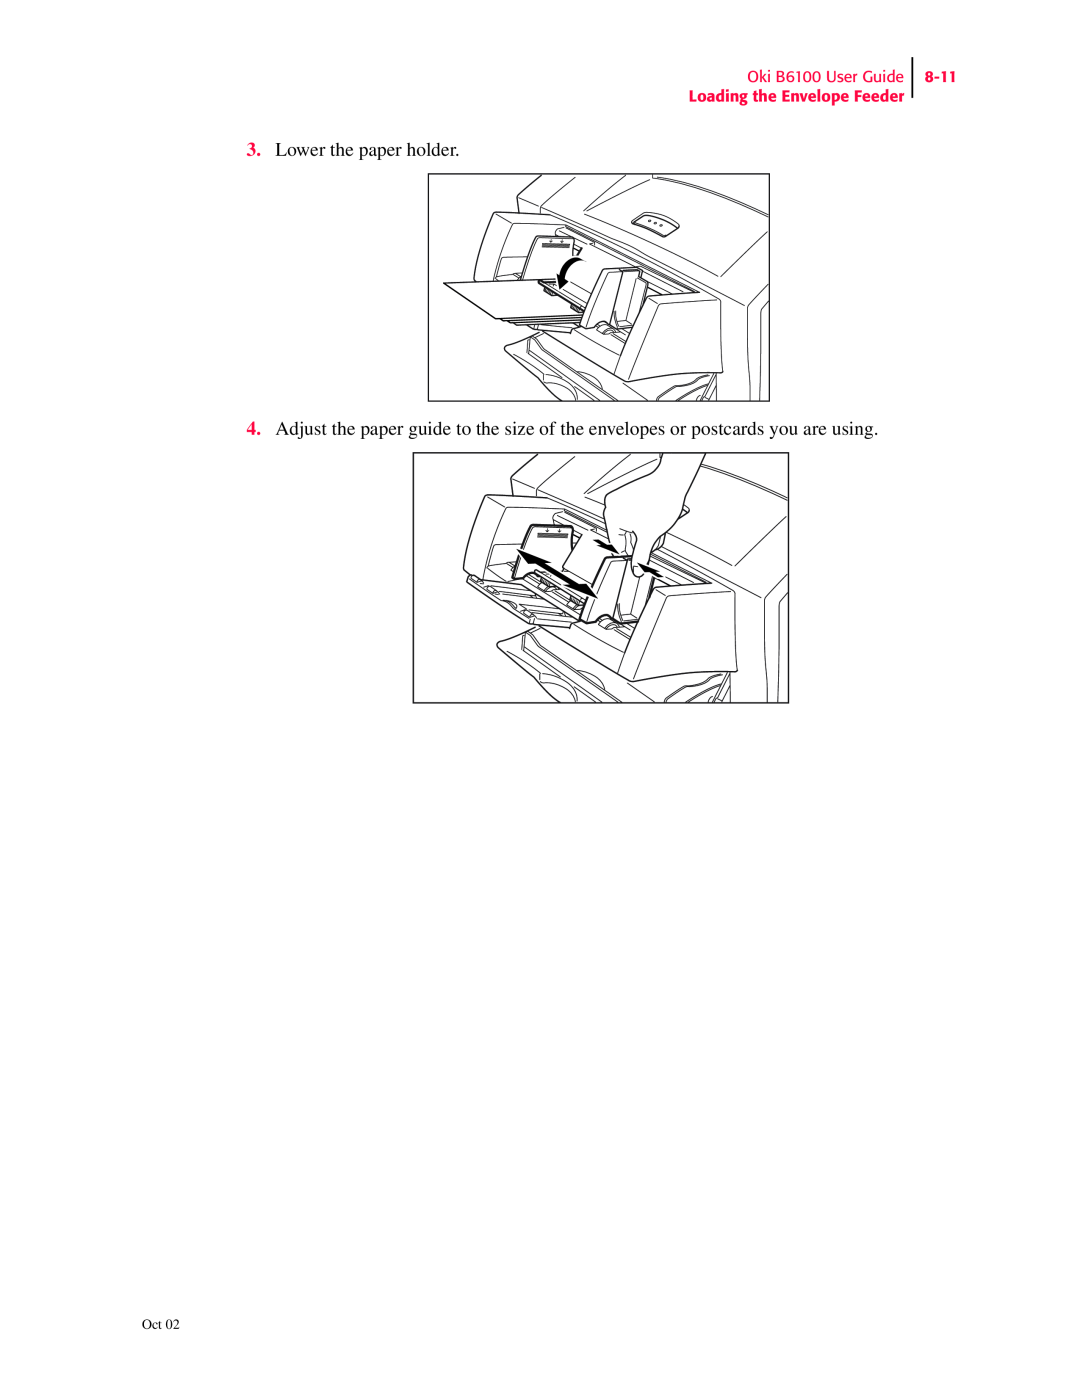 Oki manual Lower the paper holder, Oki B6100 User Guide Loading the Envelope Feeder, 8-11 